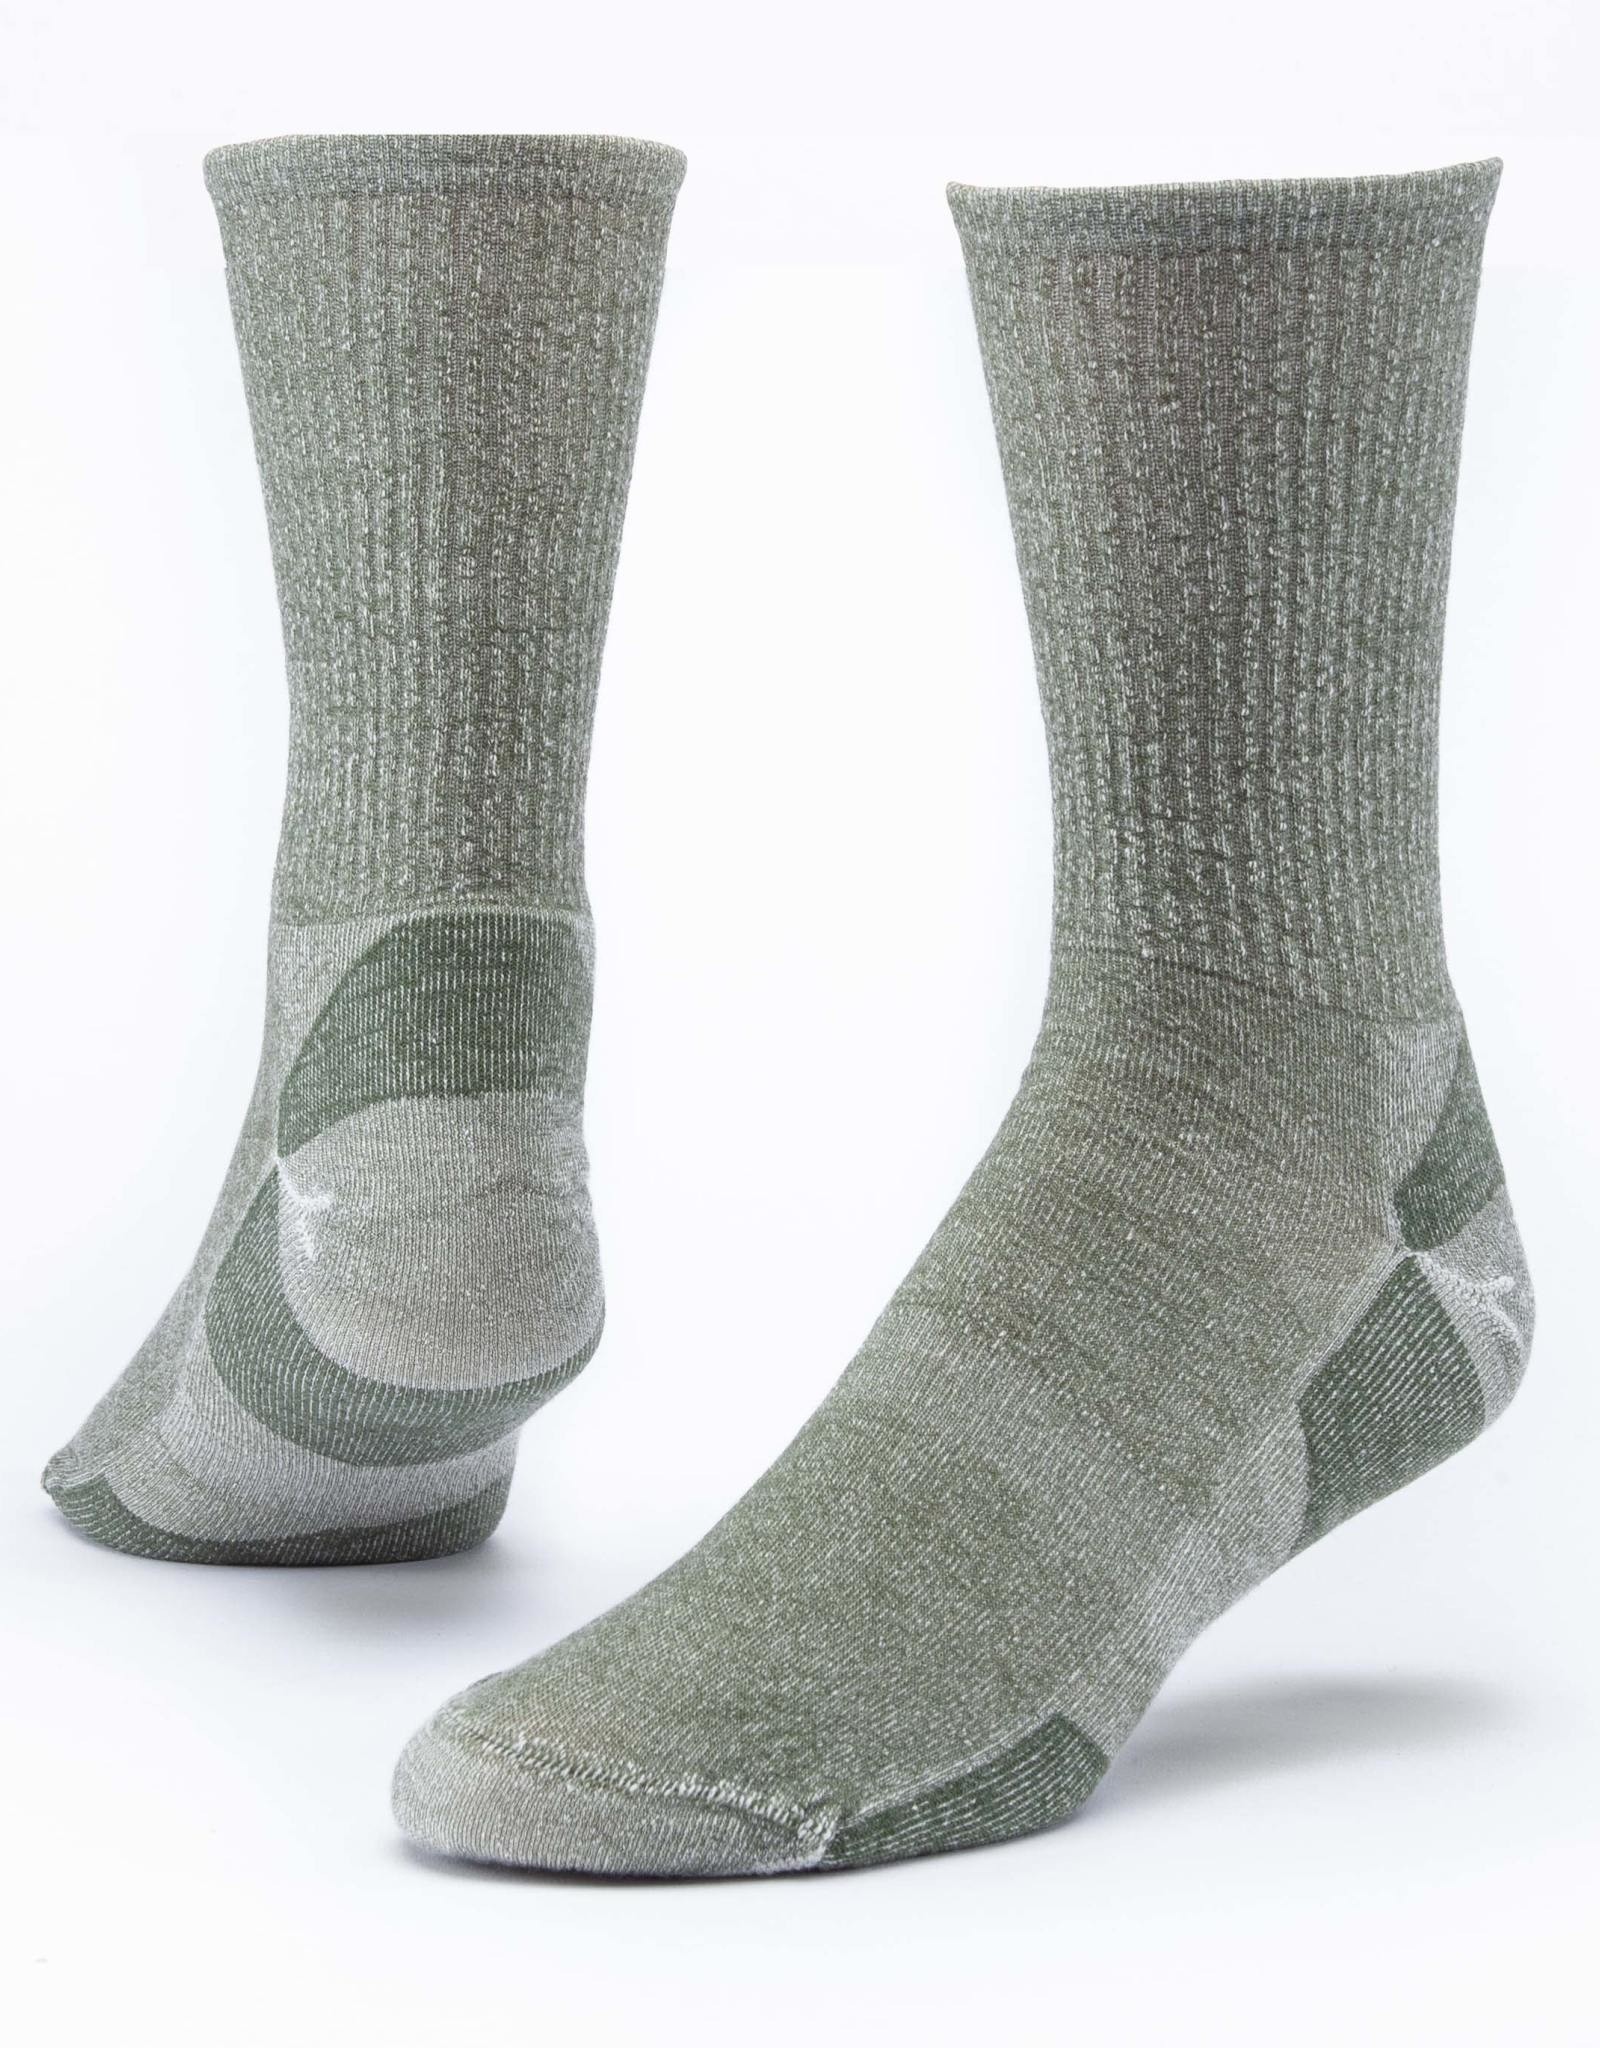 Maggie's Organics Urban Hiker Wool Crew Socks (Green)